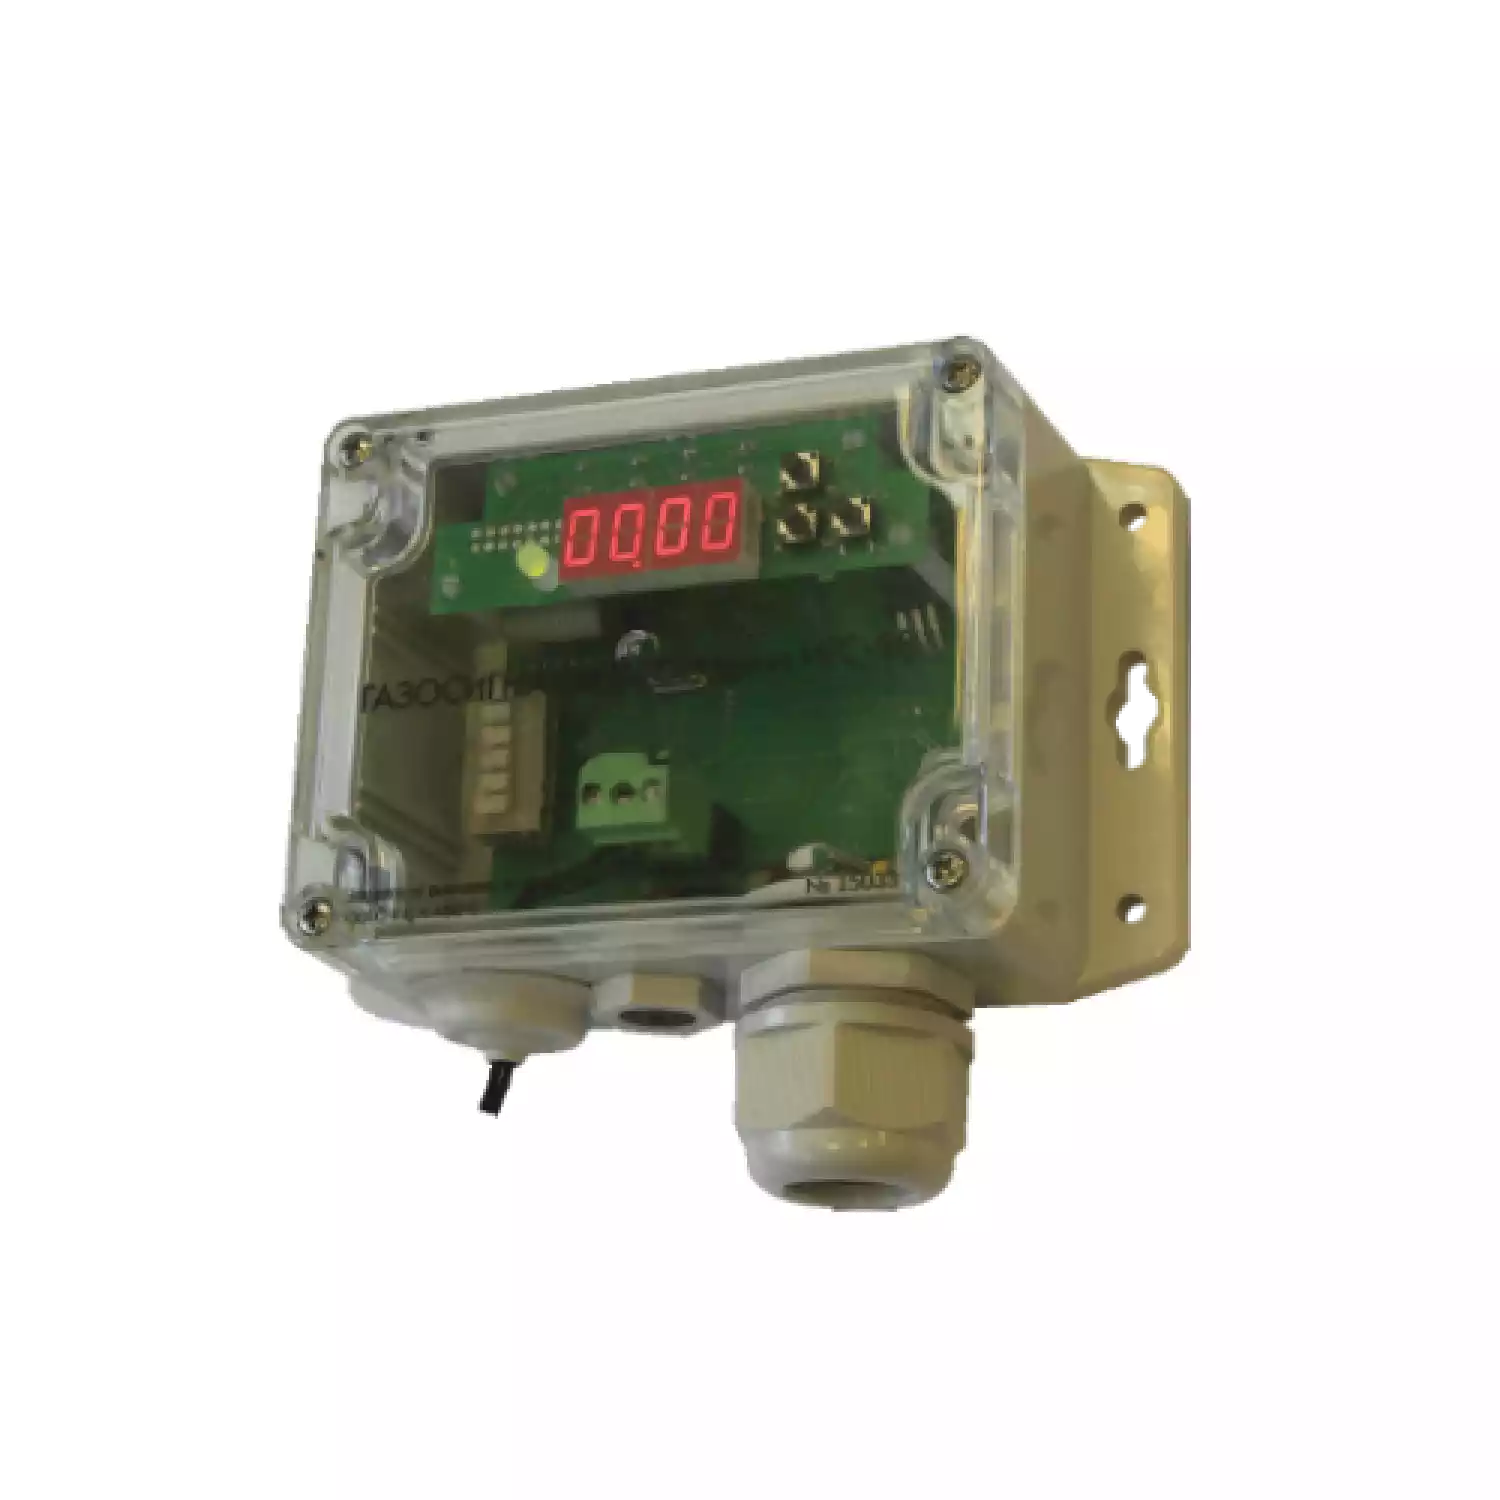 Флора-СВ серии ИГС-98 газосигнализатор стационарный на формальдегид Н2CO исполнение 011 - 1